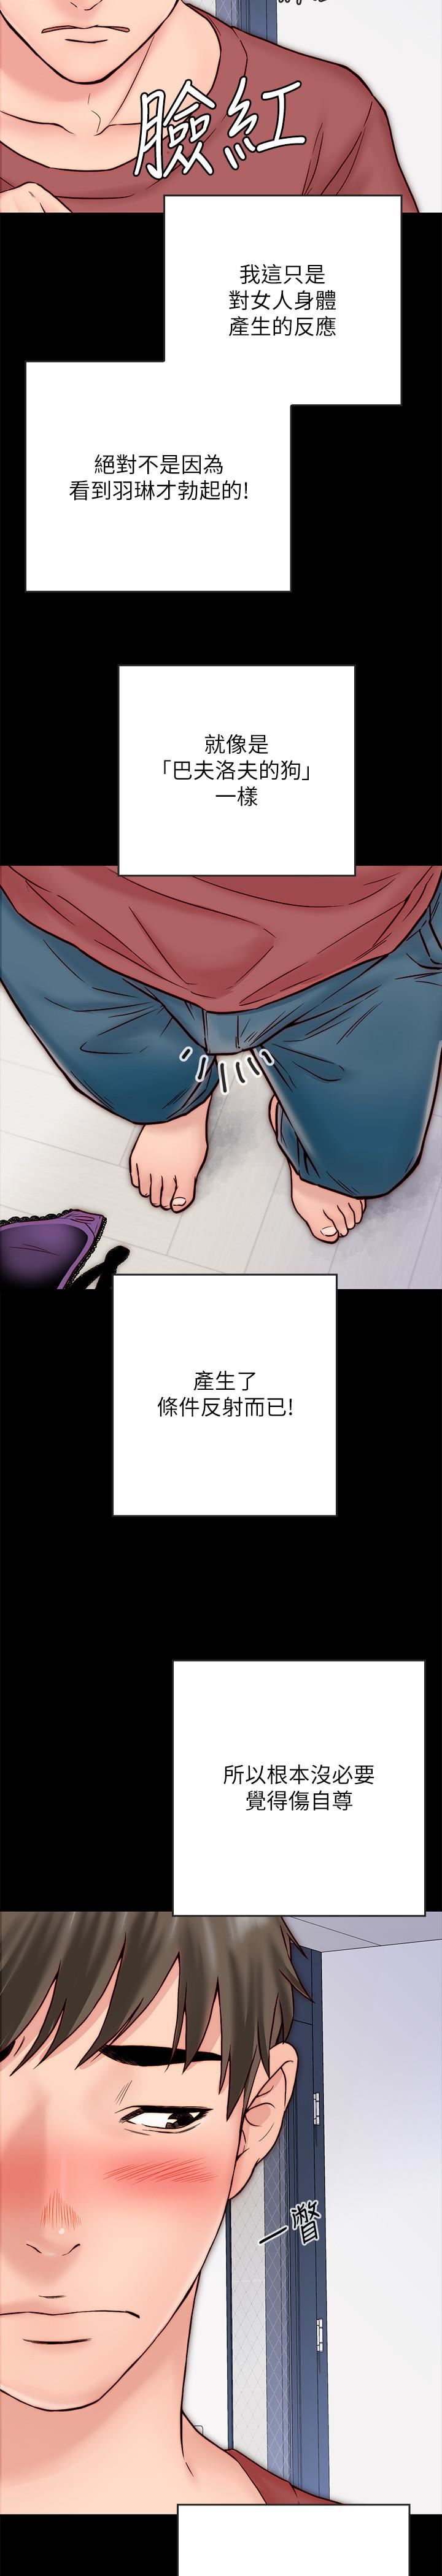 《同居密友》漫画 第3话-羽琳深藏不露的火辣身材